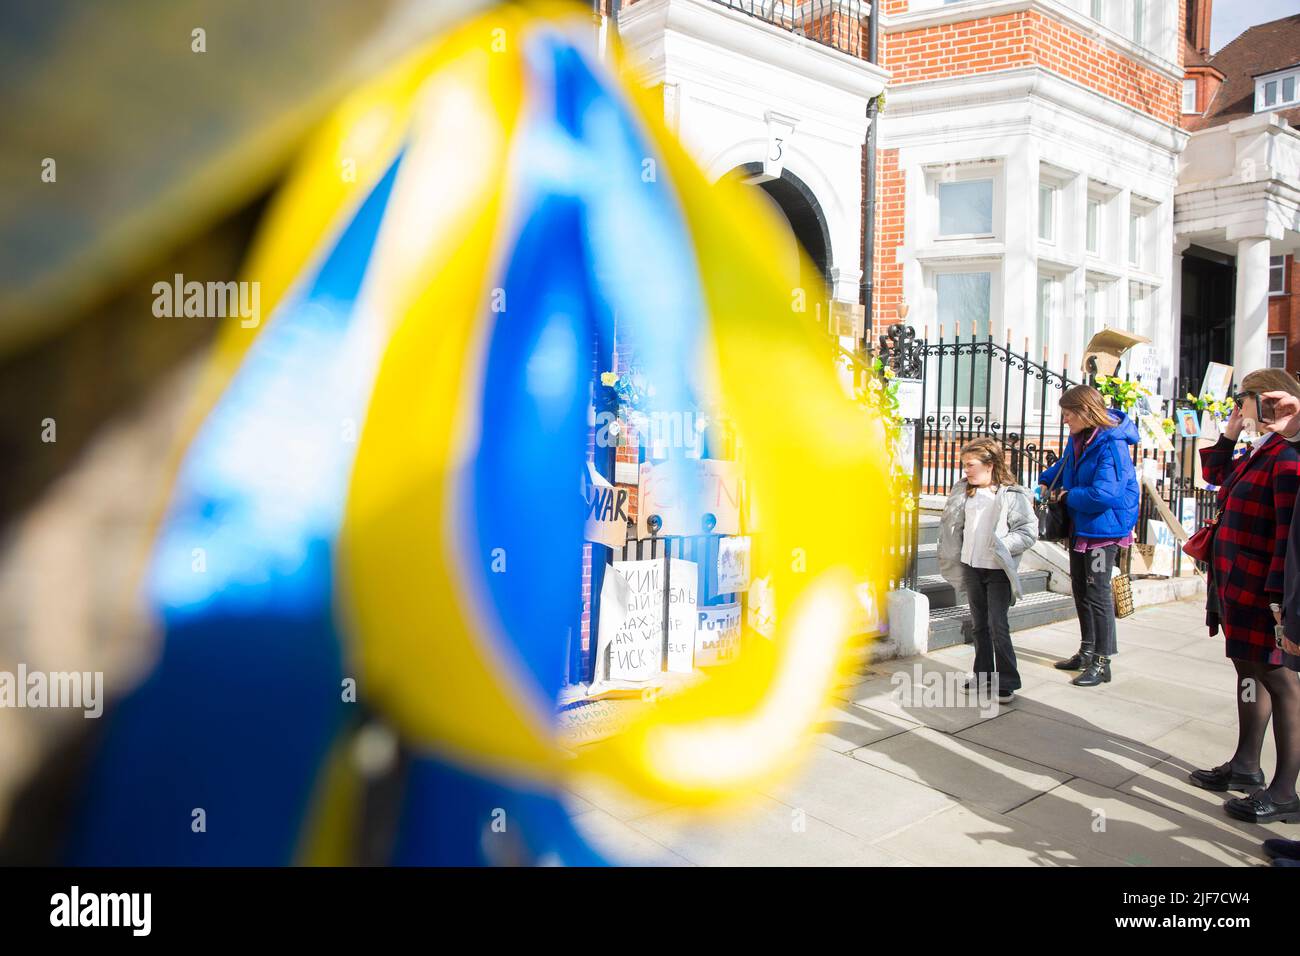 Derrière des rubans bleus et jaunes attachés à un arbre, des messages et des affiches contre l’invasion de l’Ukraine par la Russie sont laissés près de l’ambassade de Russie à Londres. Banque D'Images